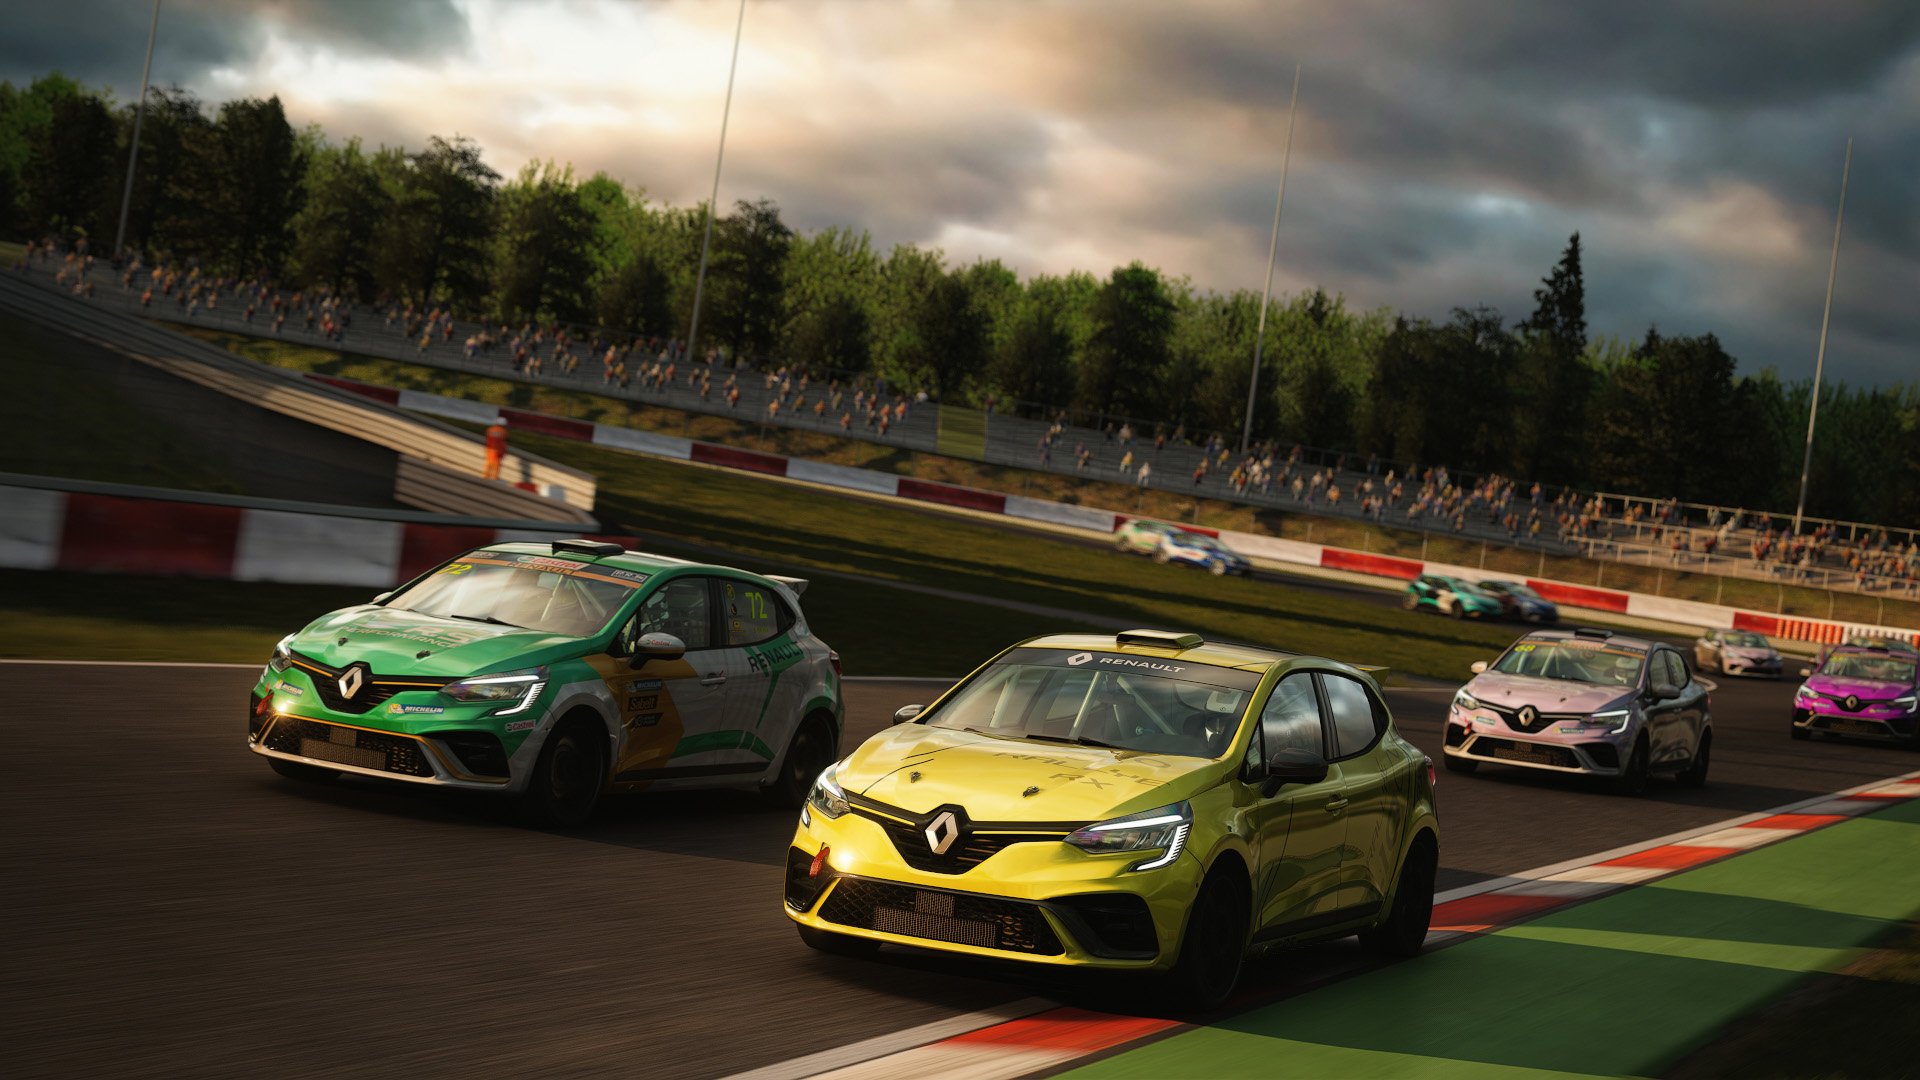 More information about "Nuova Renault Clio RS Cup per Assetto Corsa, da non perdere!"